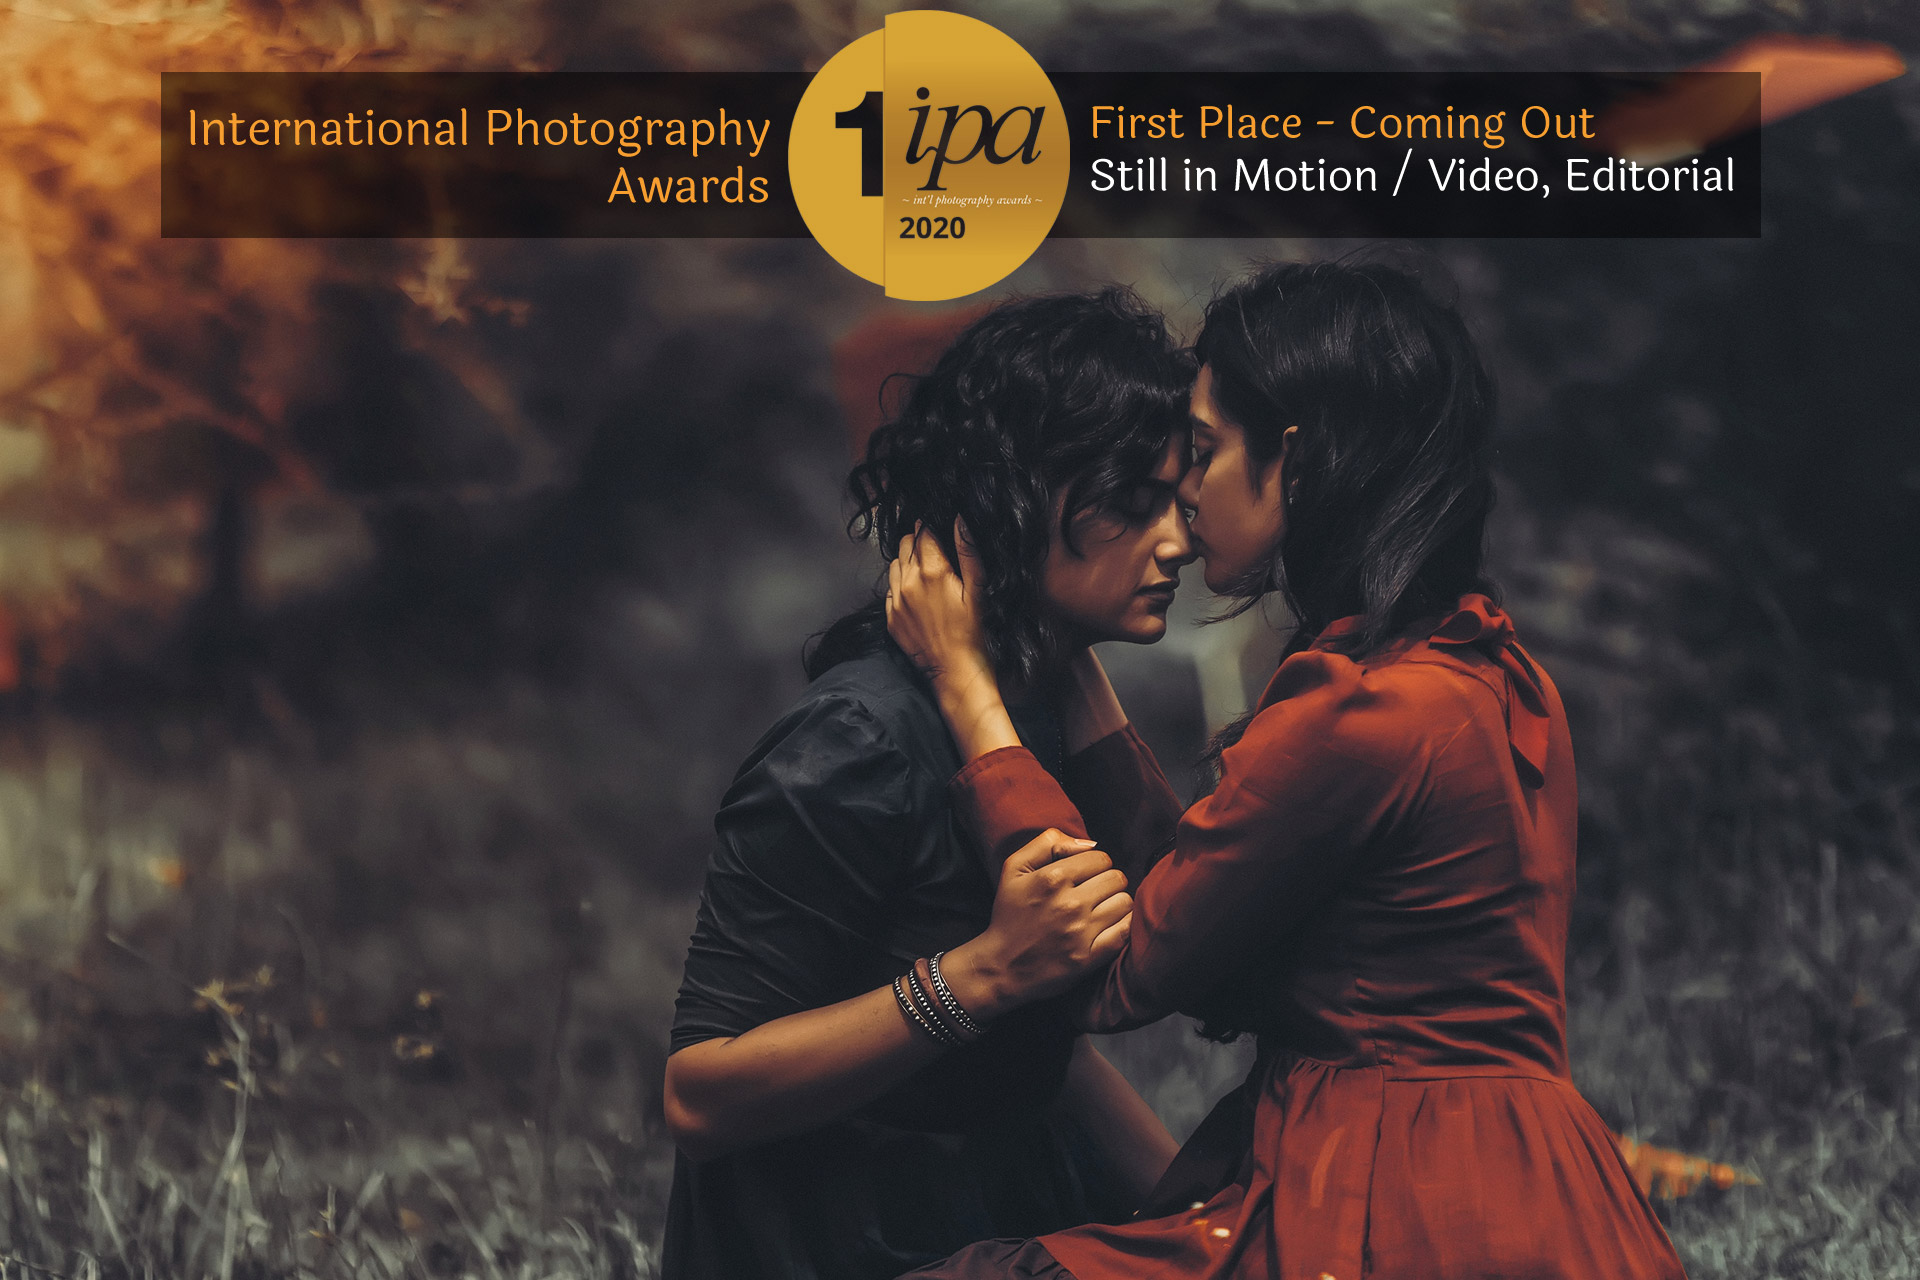 Coming Out - An Award winning photo story by Arjun Kamath